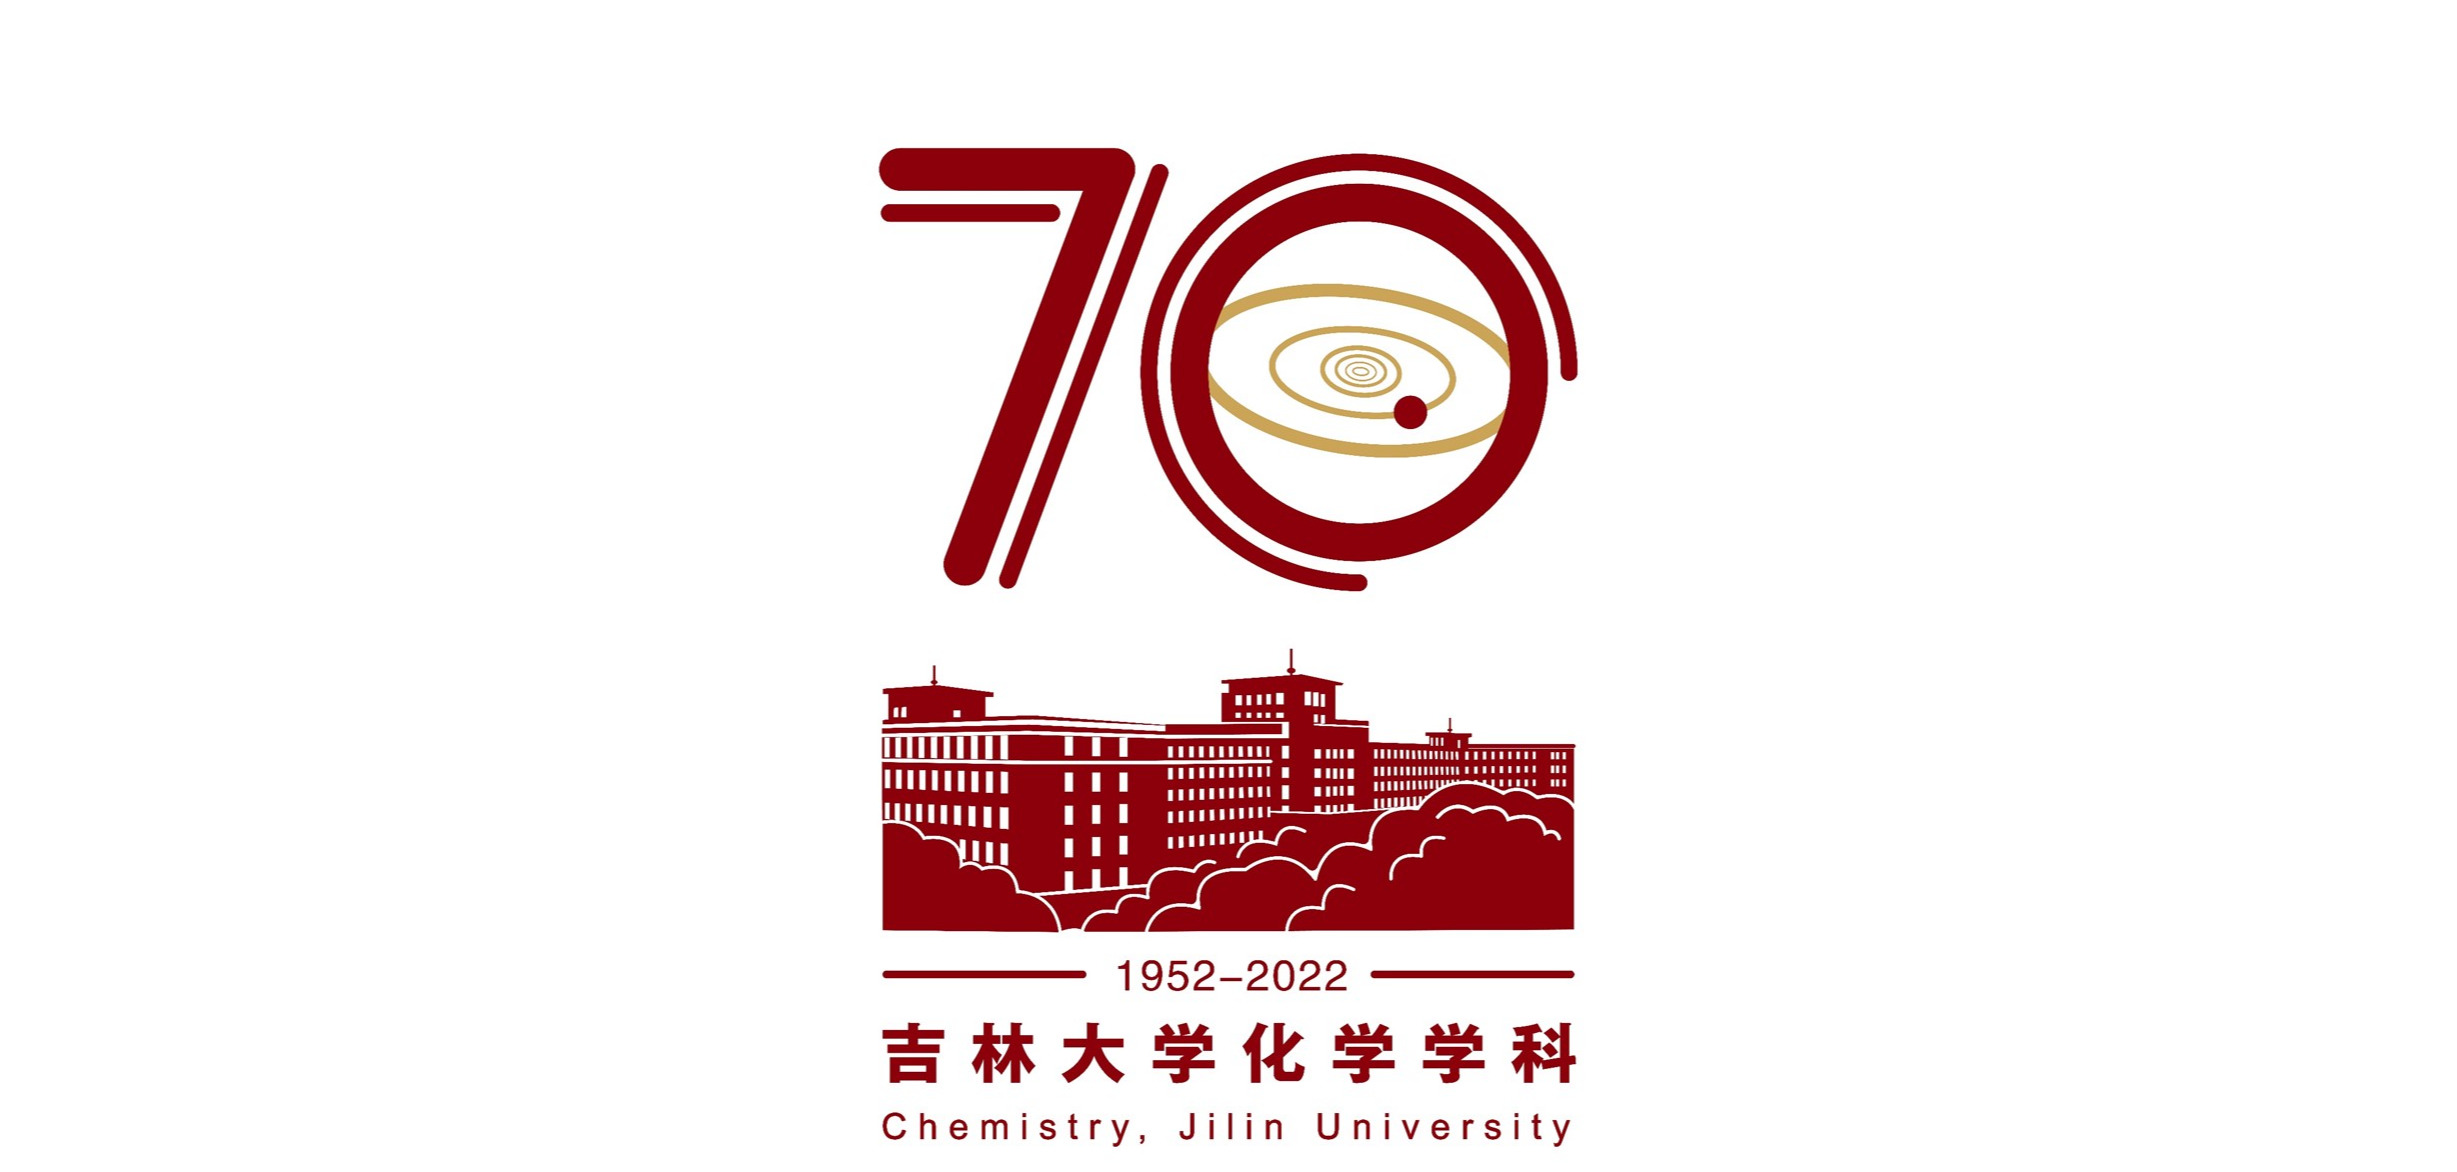 关于发布baoyu133永远免费观看化学学科创建七十年标识的公告